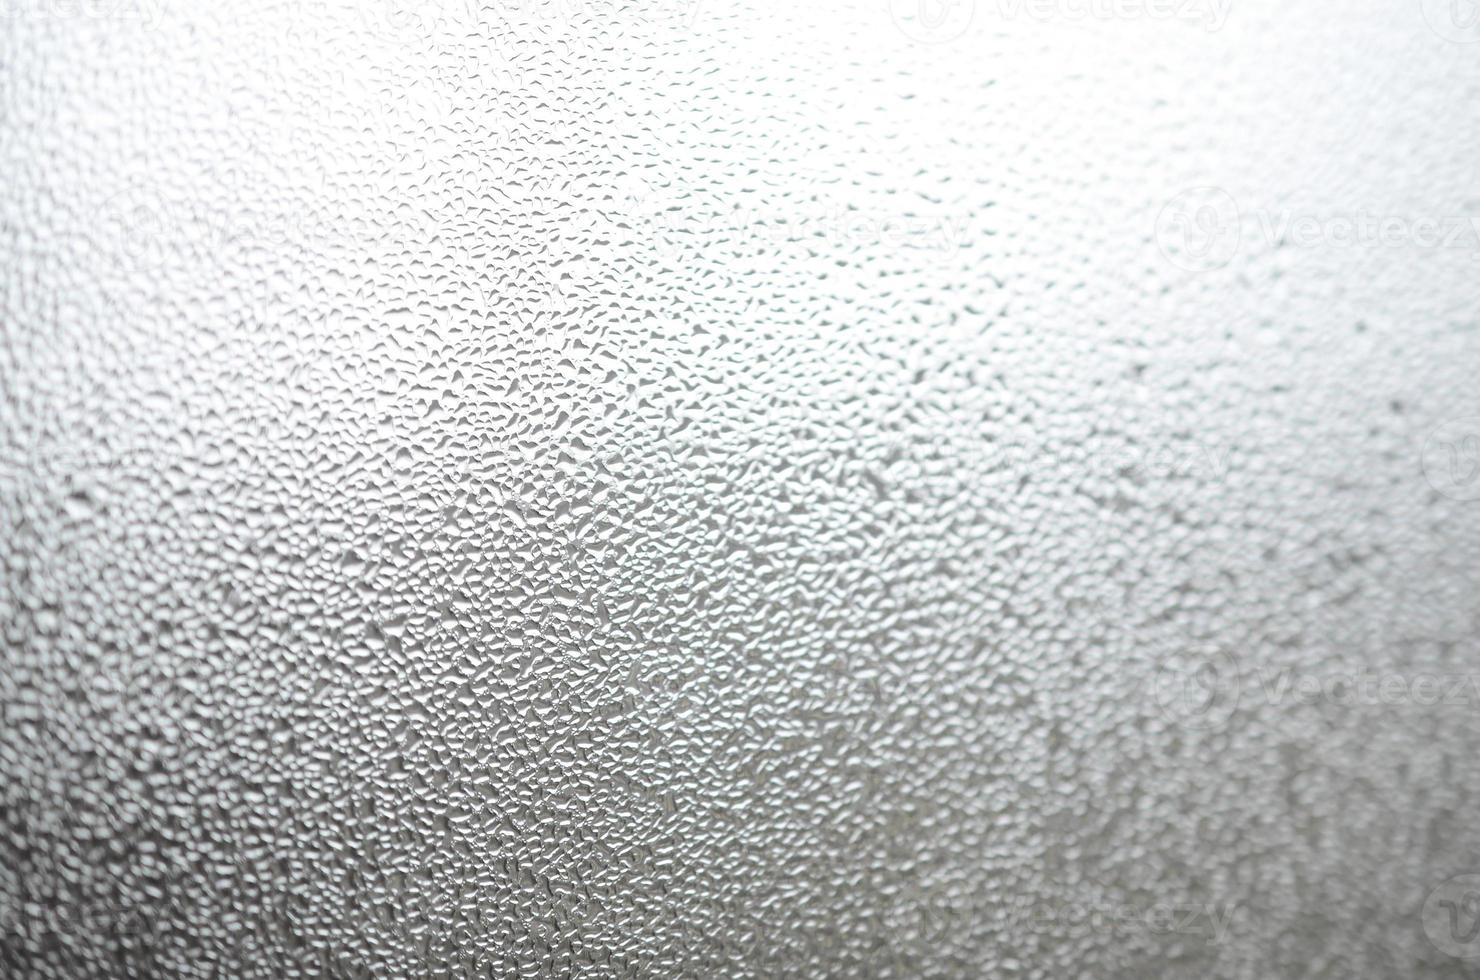 una foto de la superficie de vidrio de la ventana, cubierta con una multitud de gotas de varios tamaños. textura de fondo de una densa capa de condensado sobre vidrio